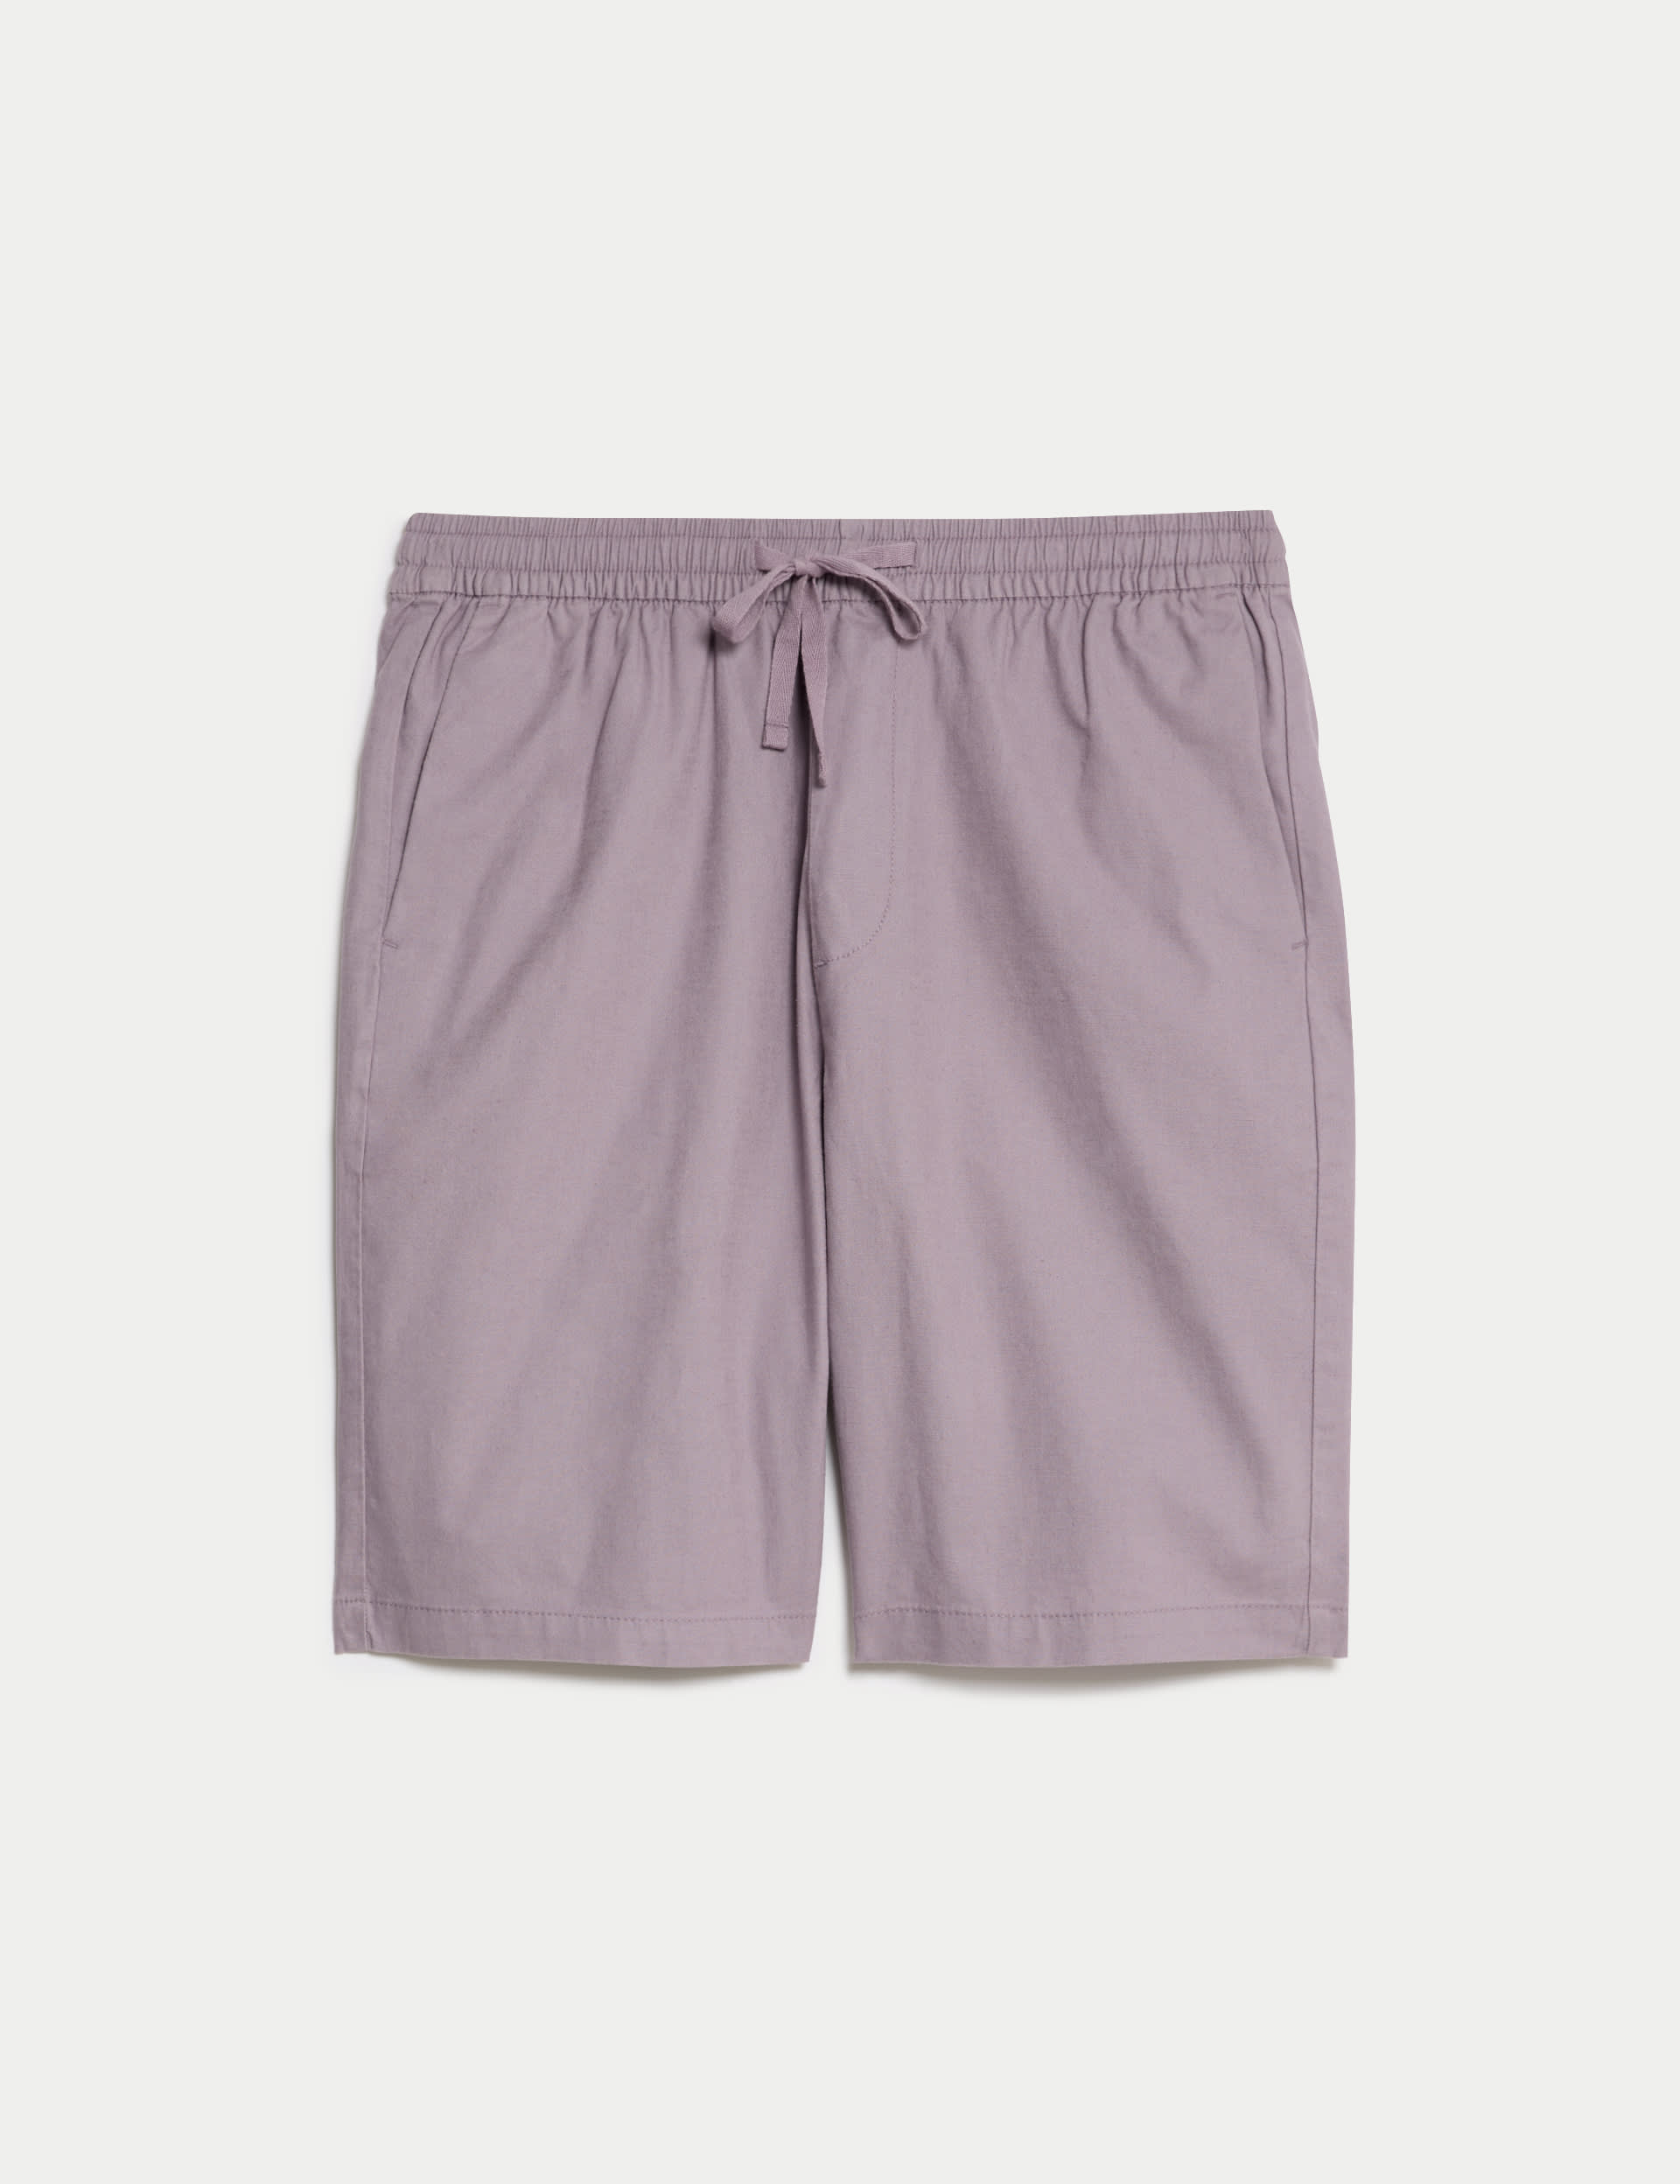 Linen Blend Elasticated Waist Stretch Shorts